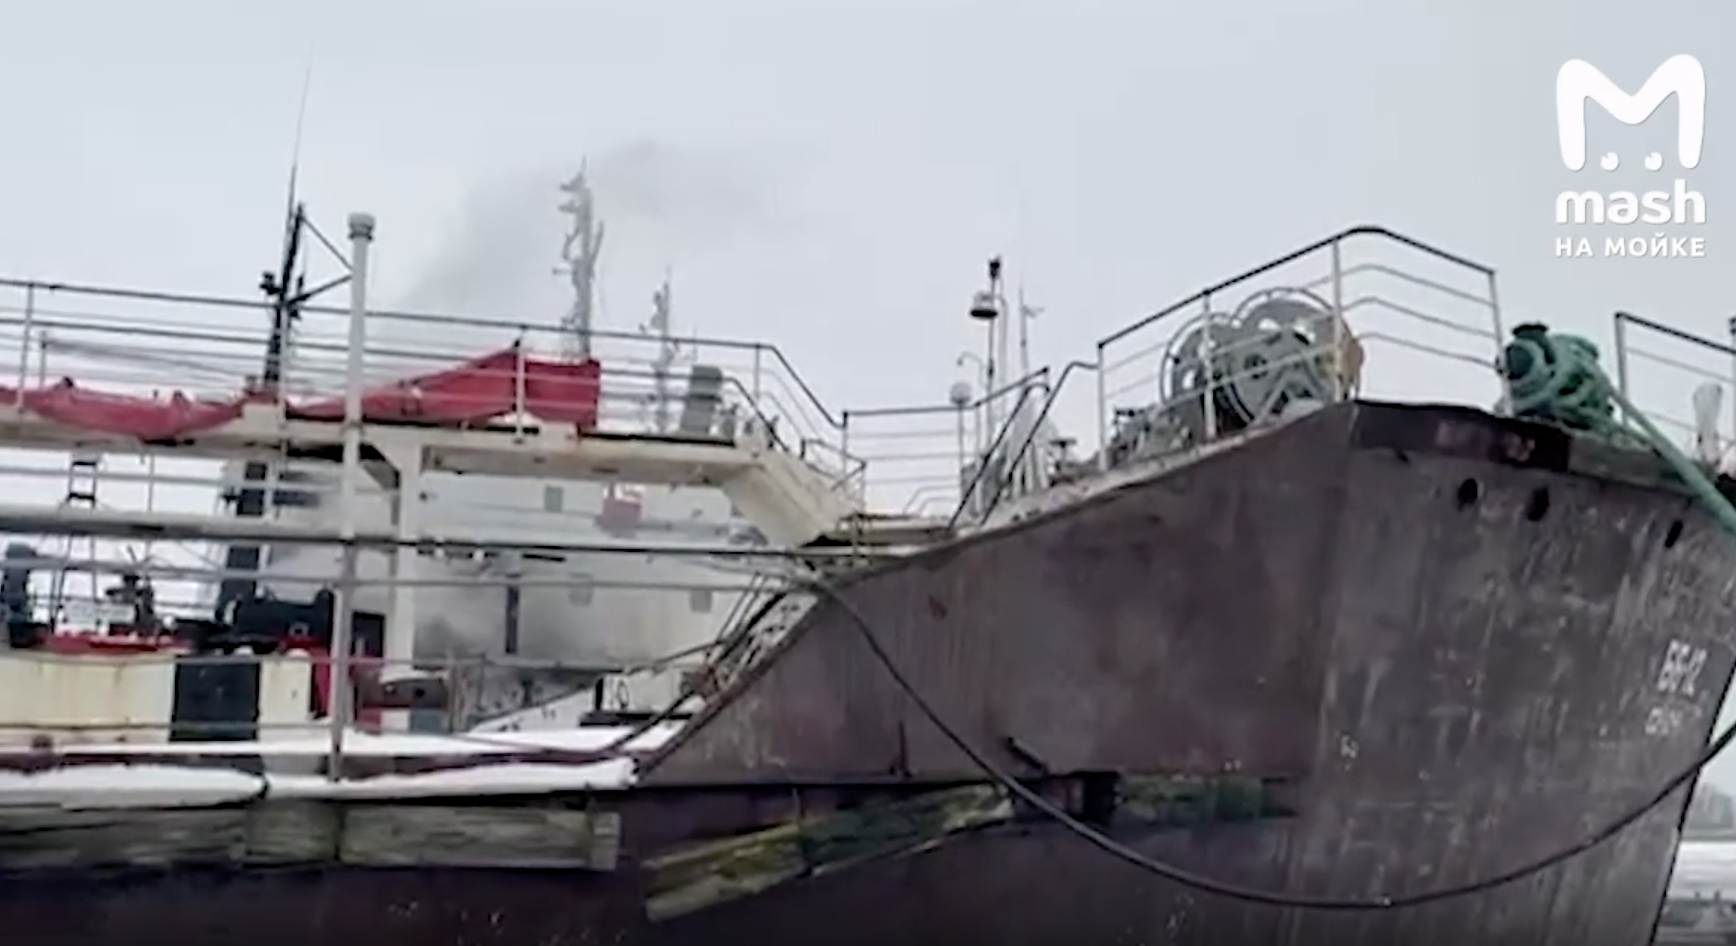 Пожар произошёл на нефтяном танкере Арктика в Кронштадте